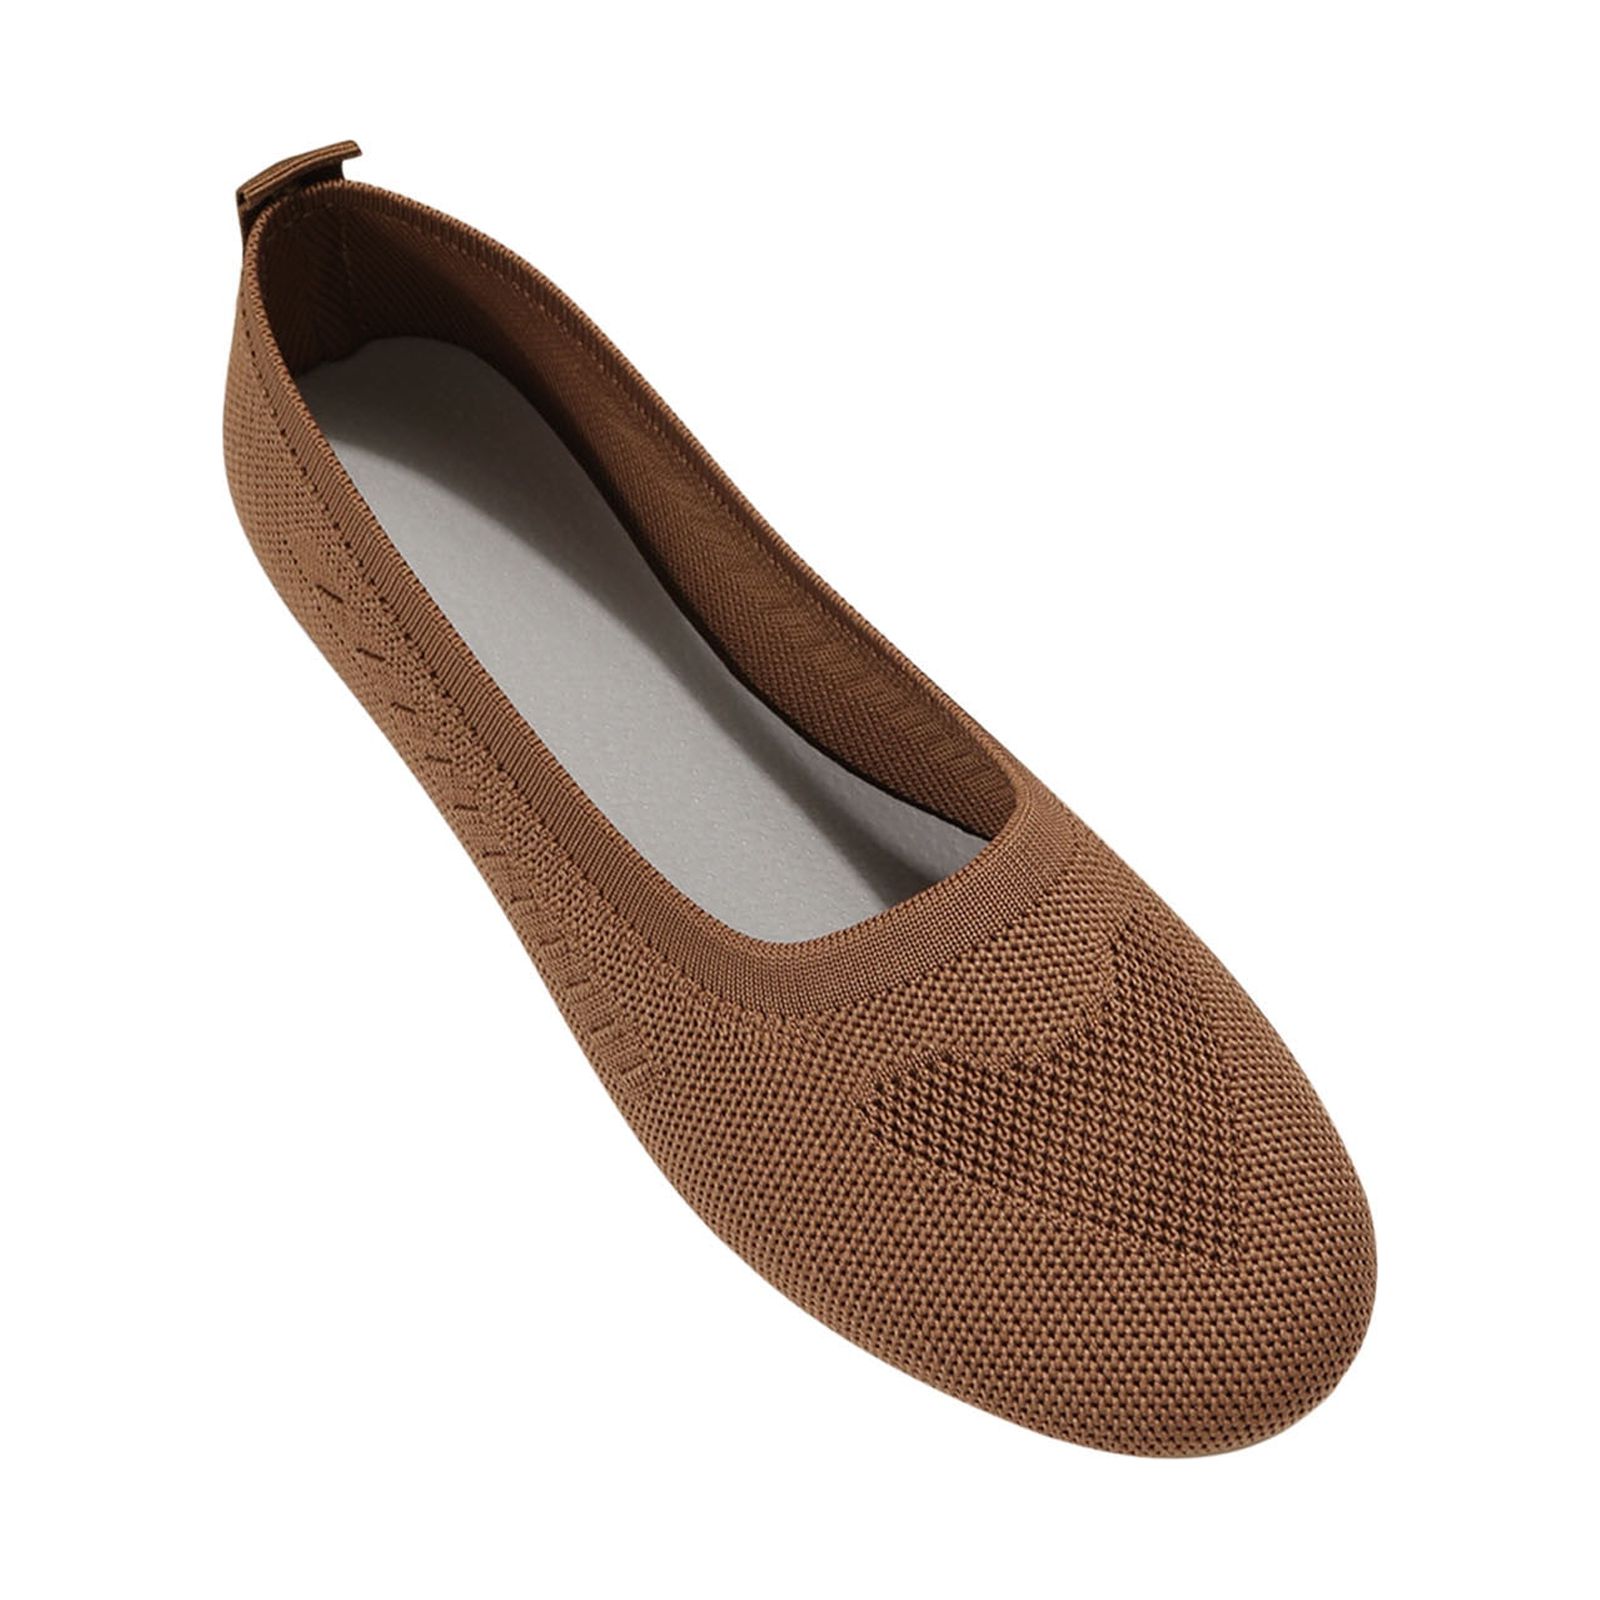 Leesechin Summer Sandals Women Deals Women Mesh Surface Casual Shoes ...